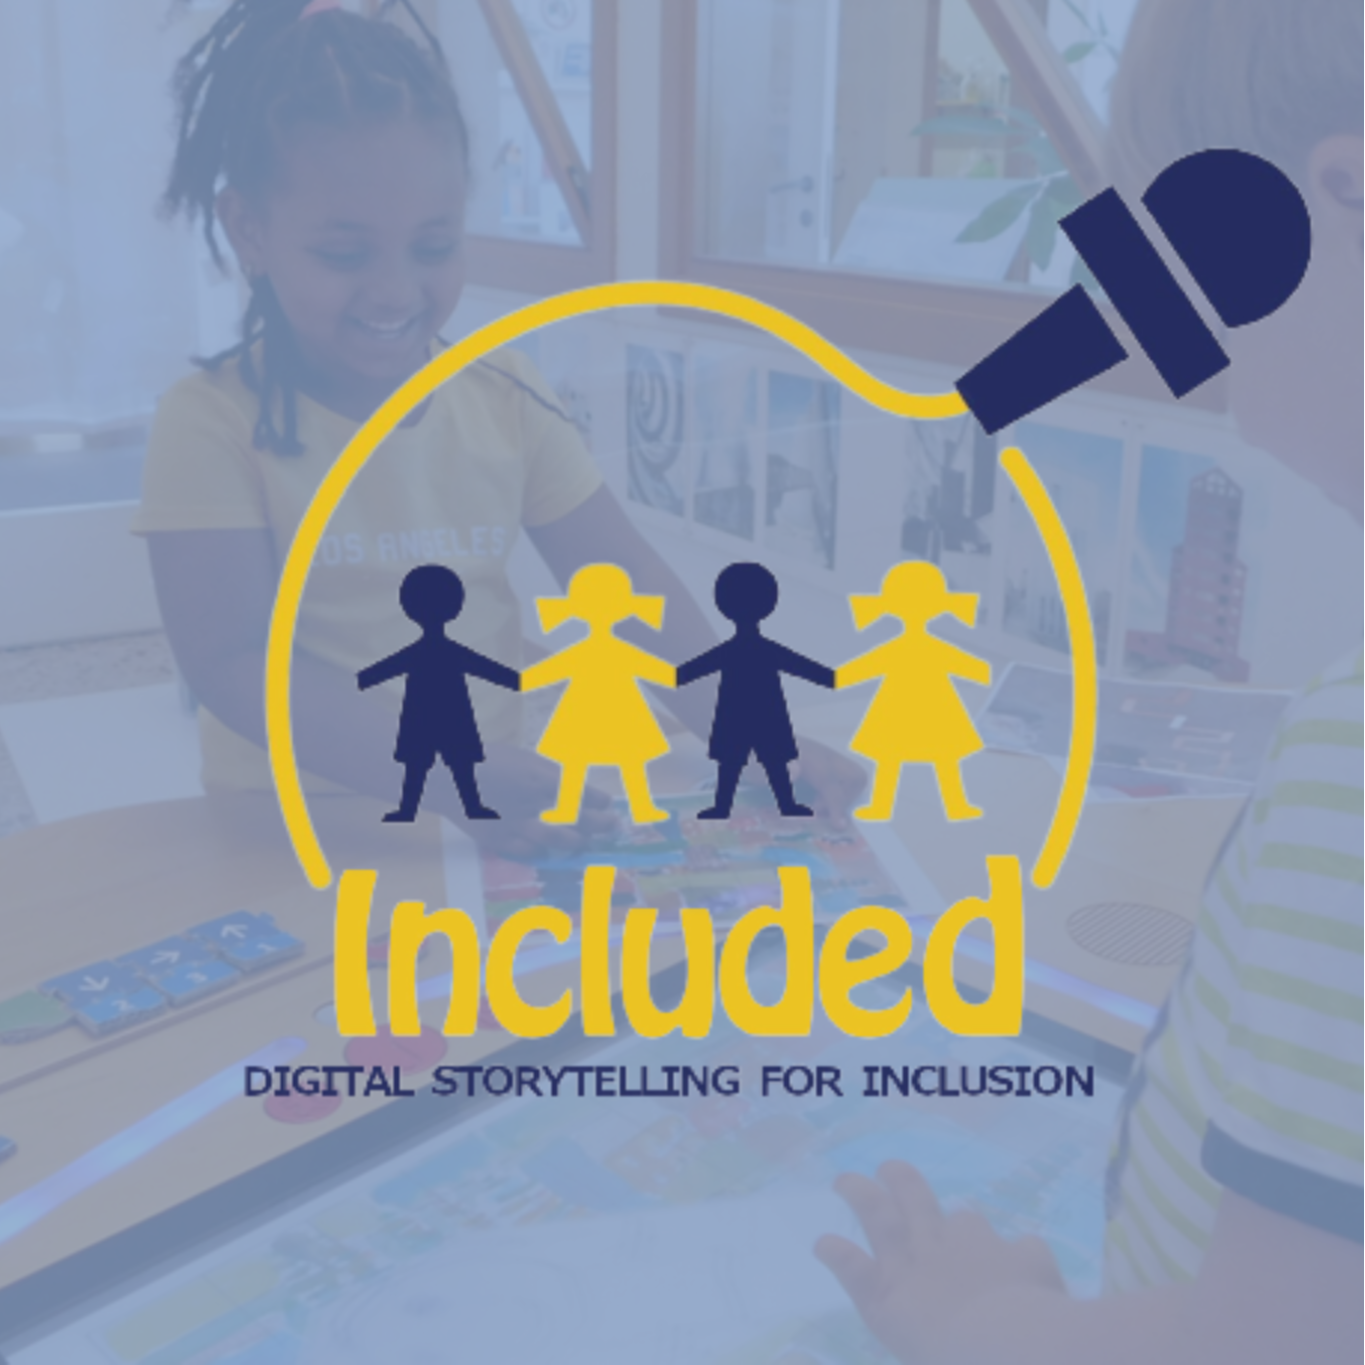 La narrazione digitale come strumento per l'inclusione